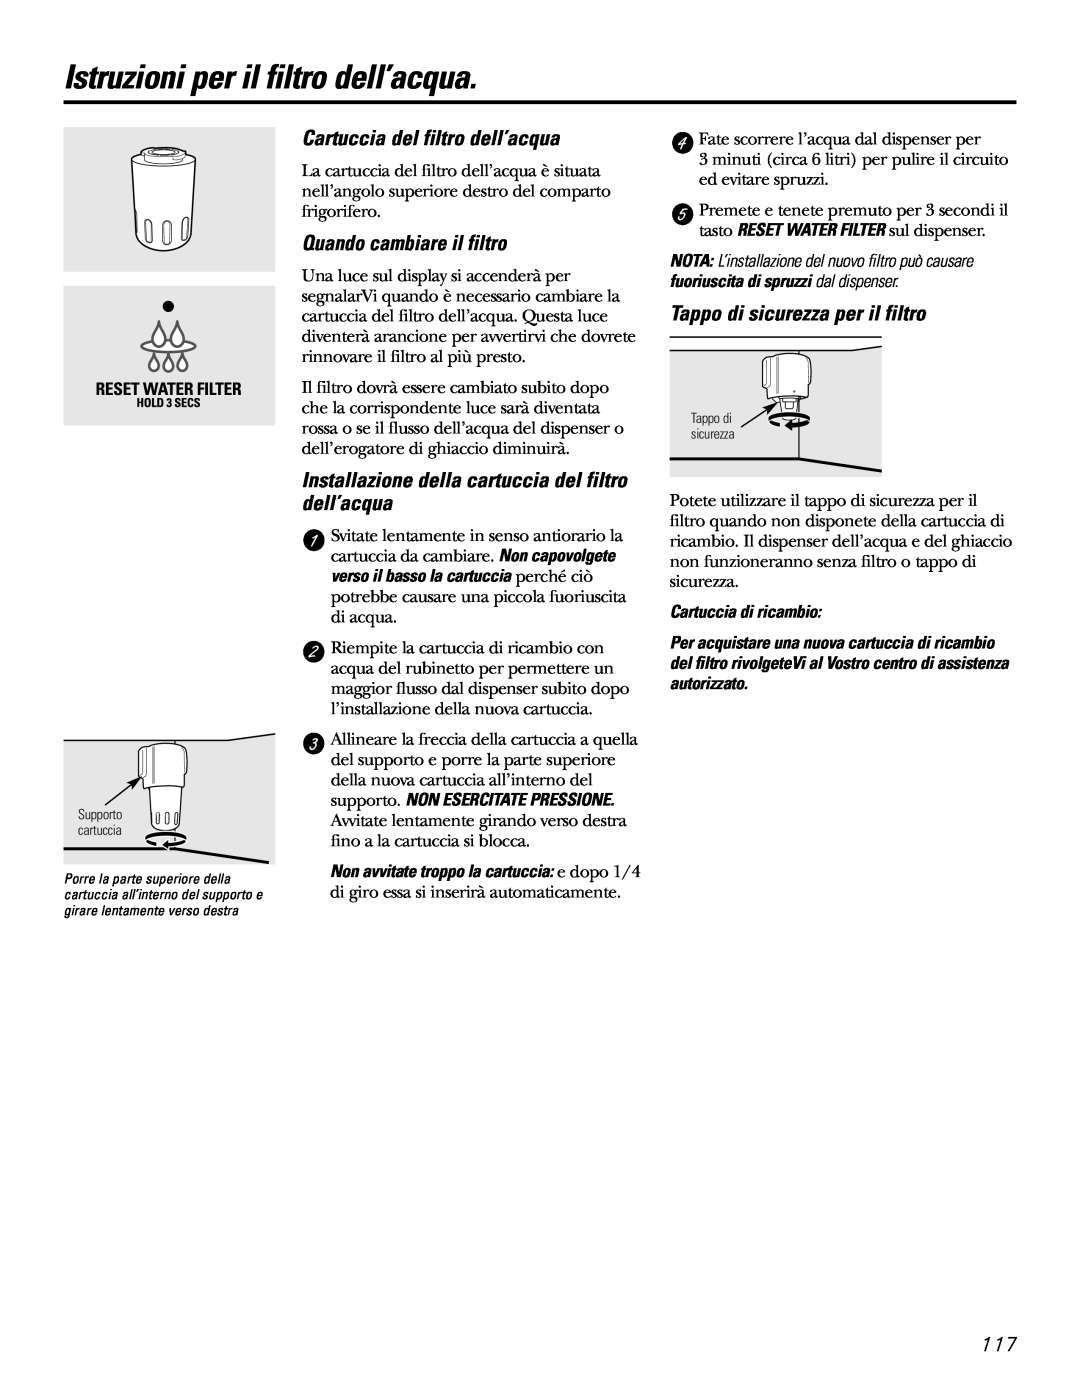 GE 21, 23, 25, 27, 29 Istruzioni per il filtro dell’acqua, Cartuccia del filtro dell’acqua, Quando cambiare il filtro 